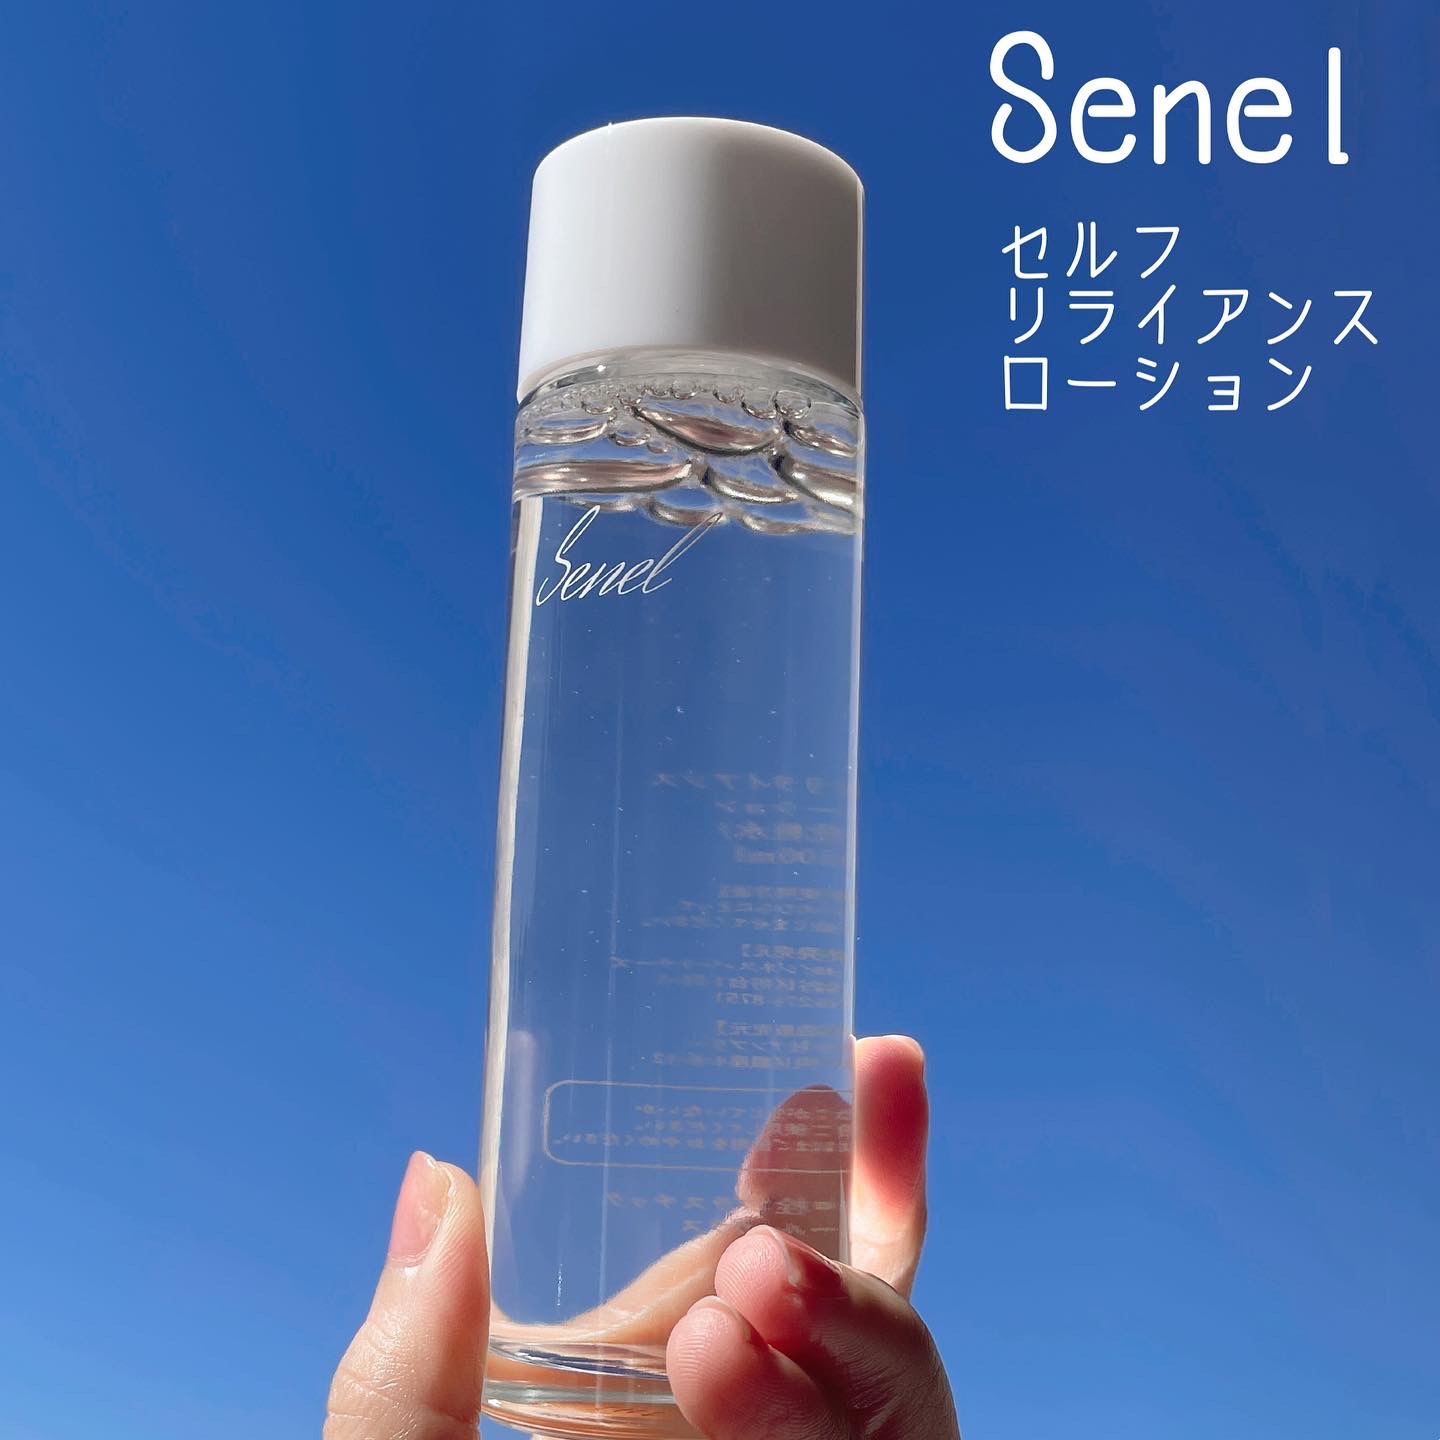 Senel(セネル) セルフリライアンス ローションの良い点・メリットに関するなゆさんの口コミ画像1